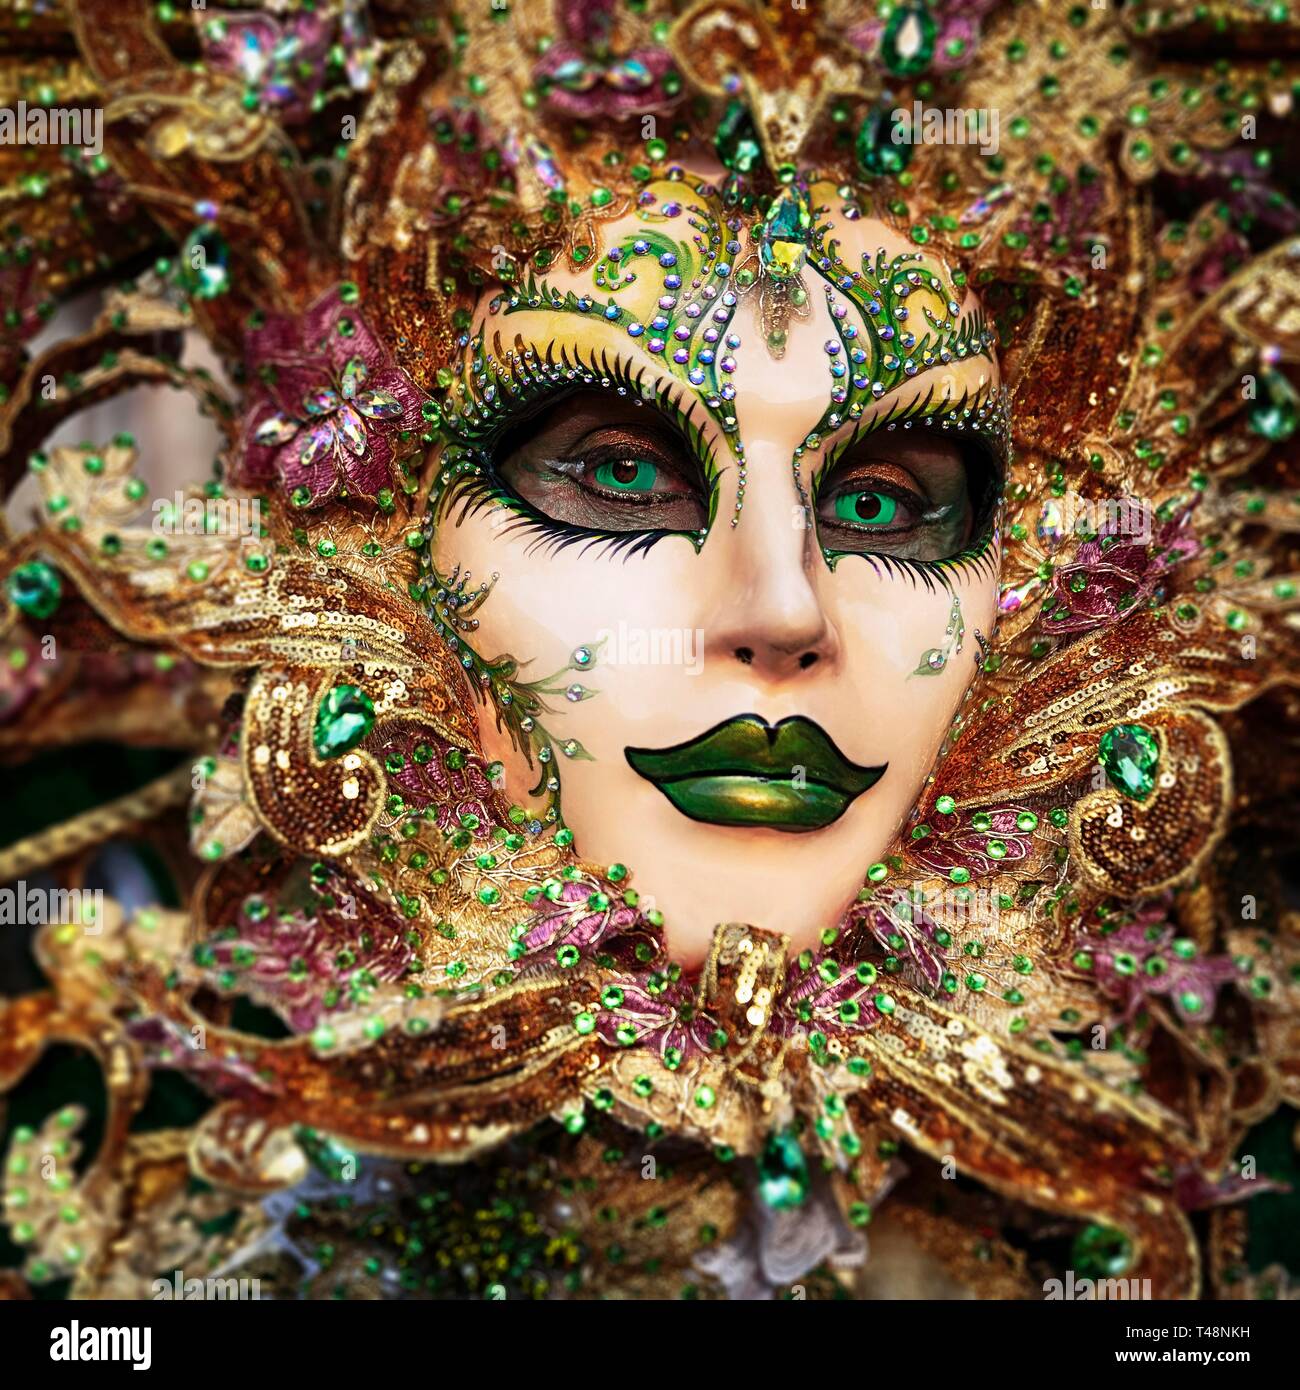 Venecia Máscara De Carnaval - Venecia, Venecia, Italia, Europa Fotos,  retratos, imágenes y fotografía de archivo libres de derecho. Image 12734163